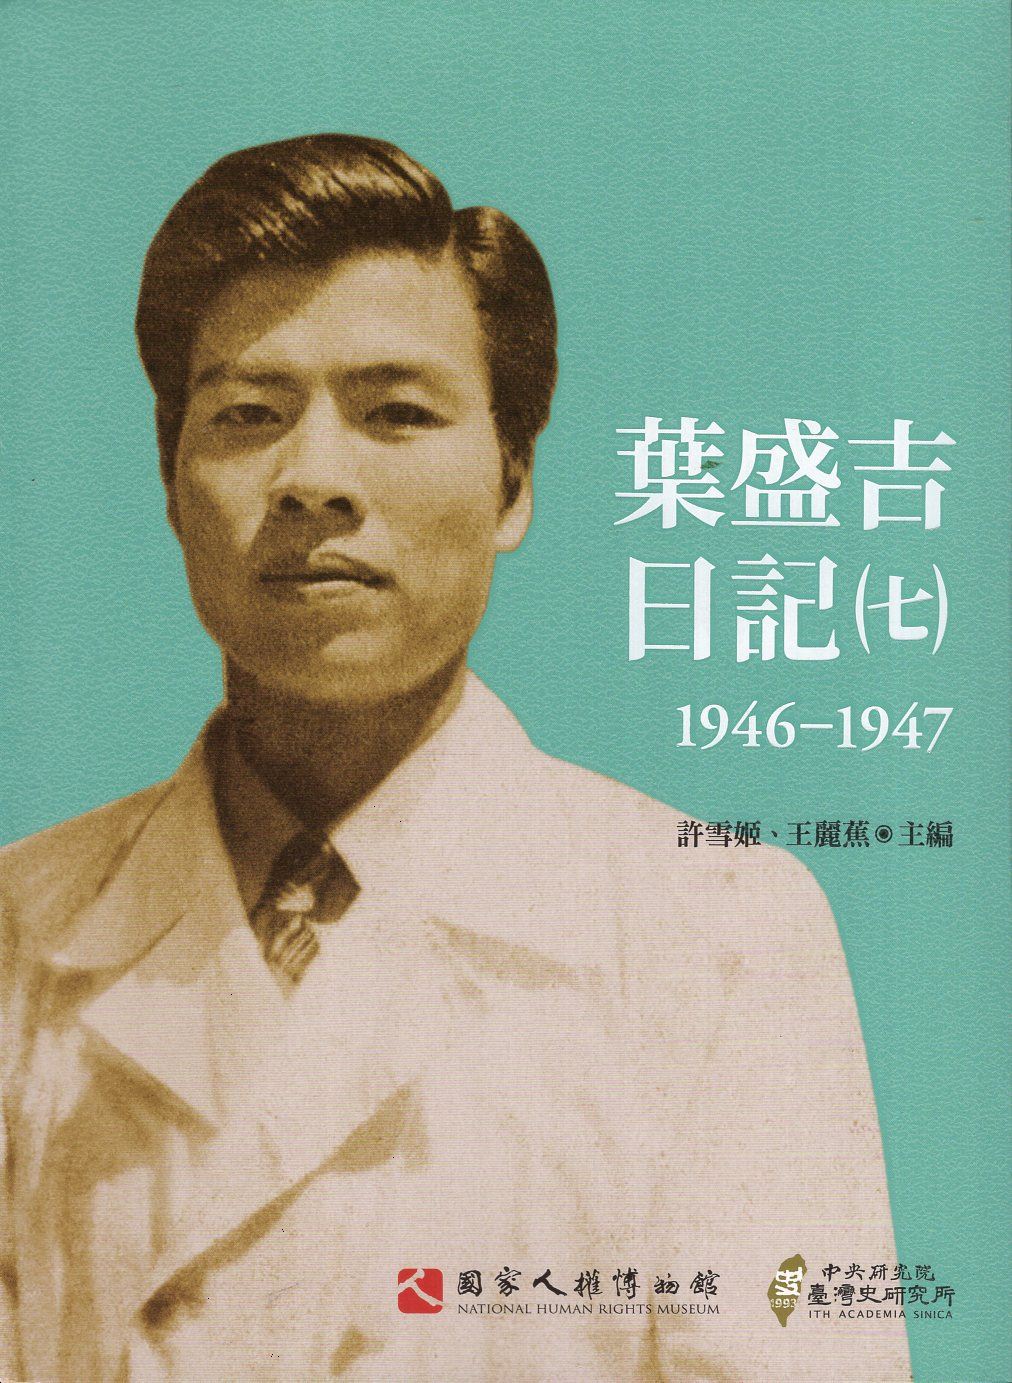 葉盛吉日記(七)1946-1947 的圖說